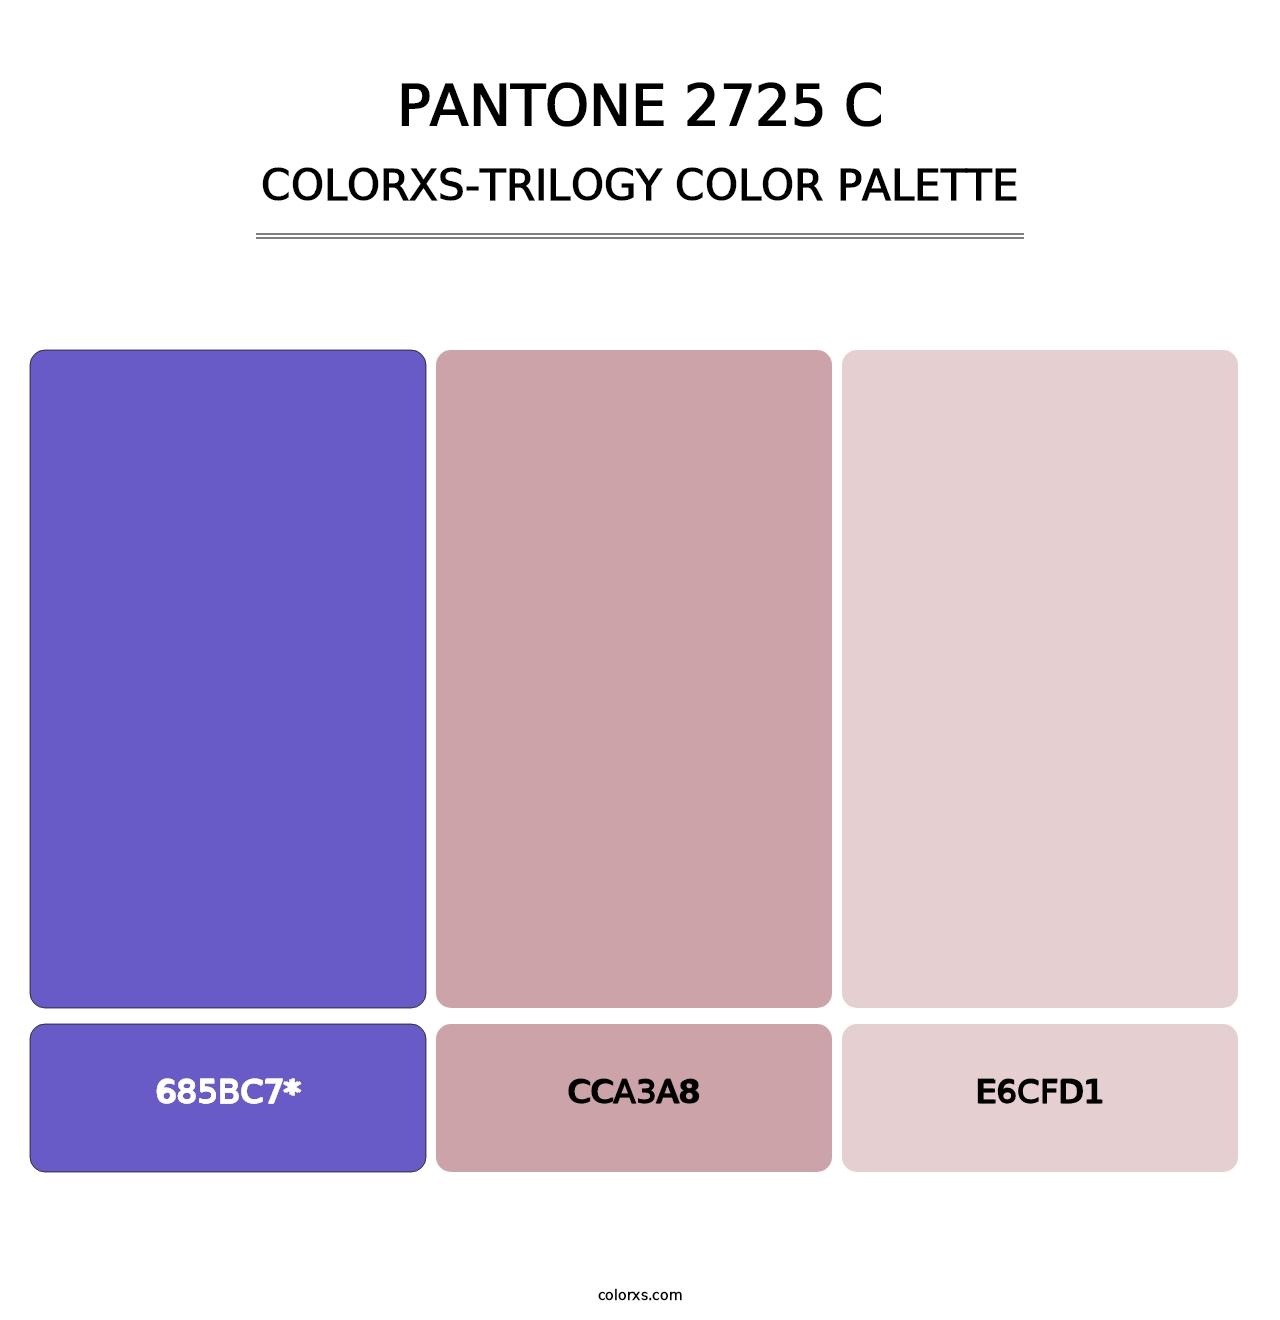 PANTONE 2725 C - Colorxs Trilogy Palette